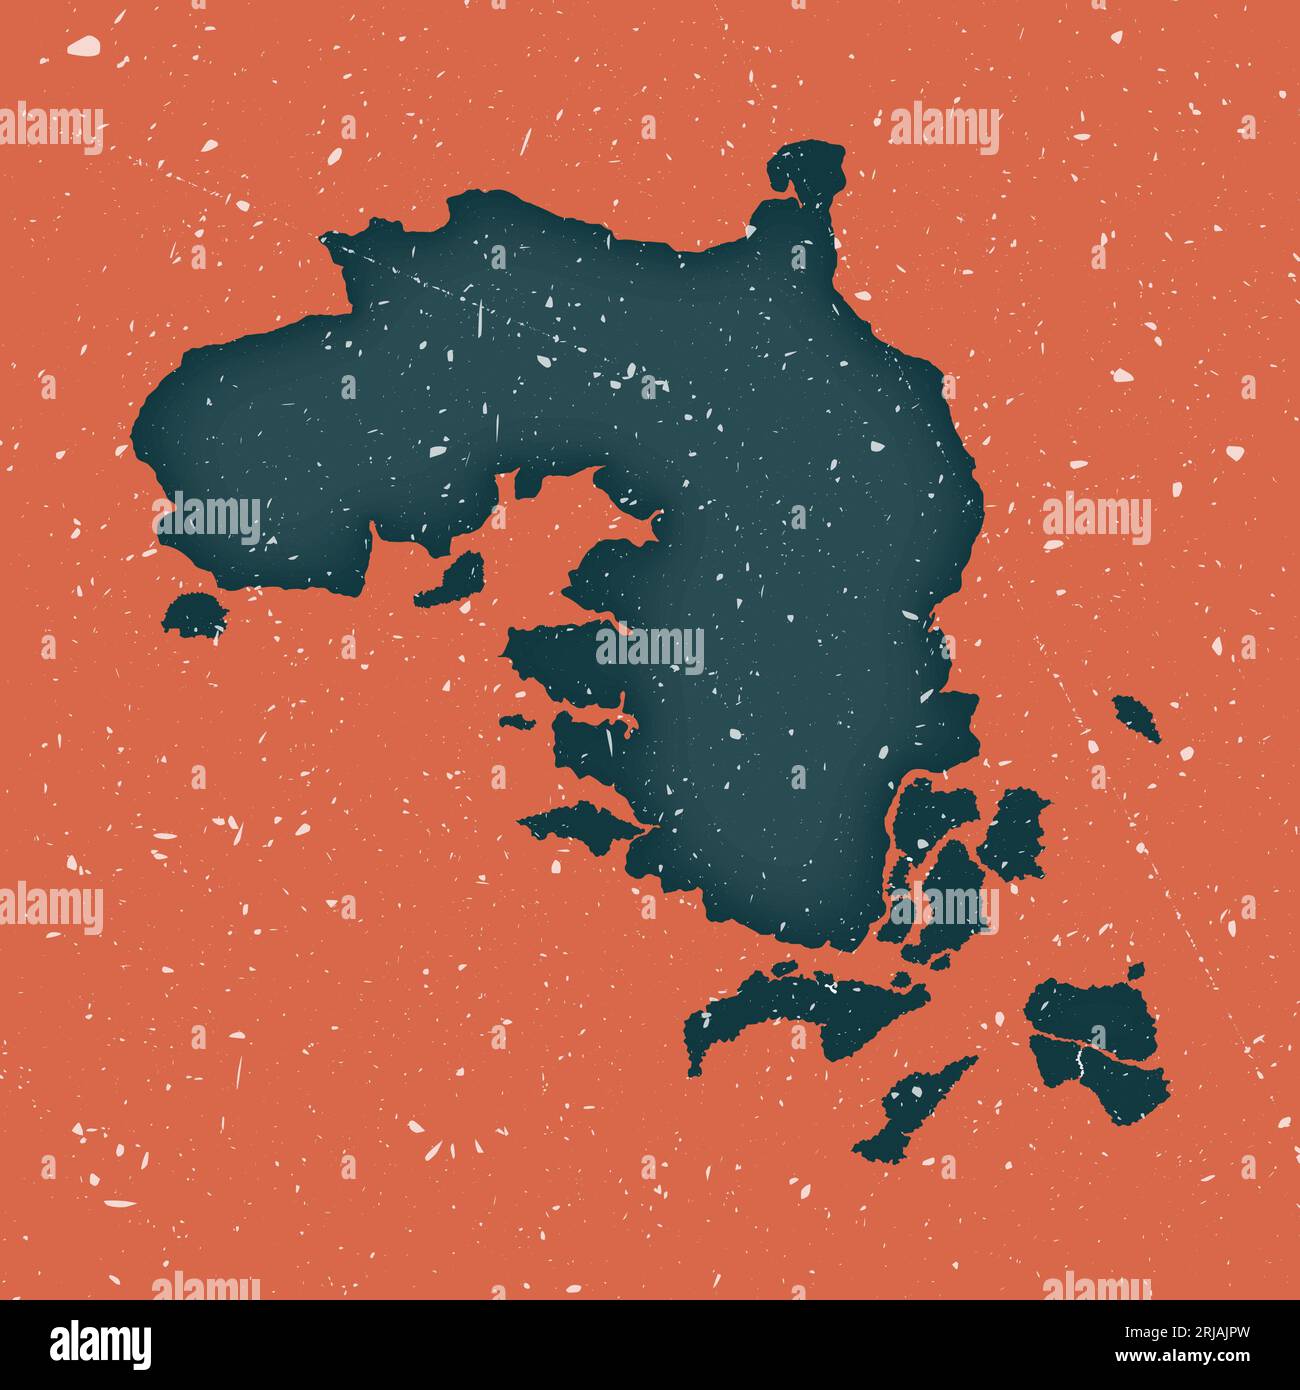 Alte Karte von Bintan Island. Grunge-Karte mit verstörter Textur. Poster: Bintan Island. Vektorillustration. Stock Vektor